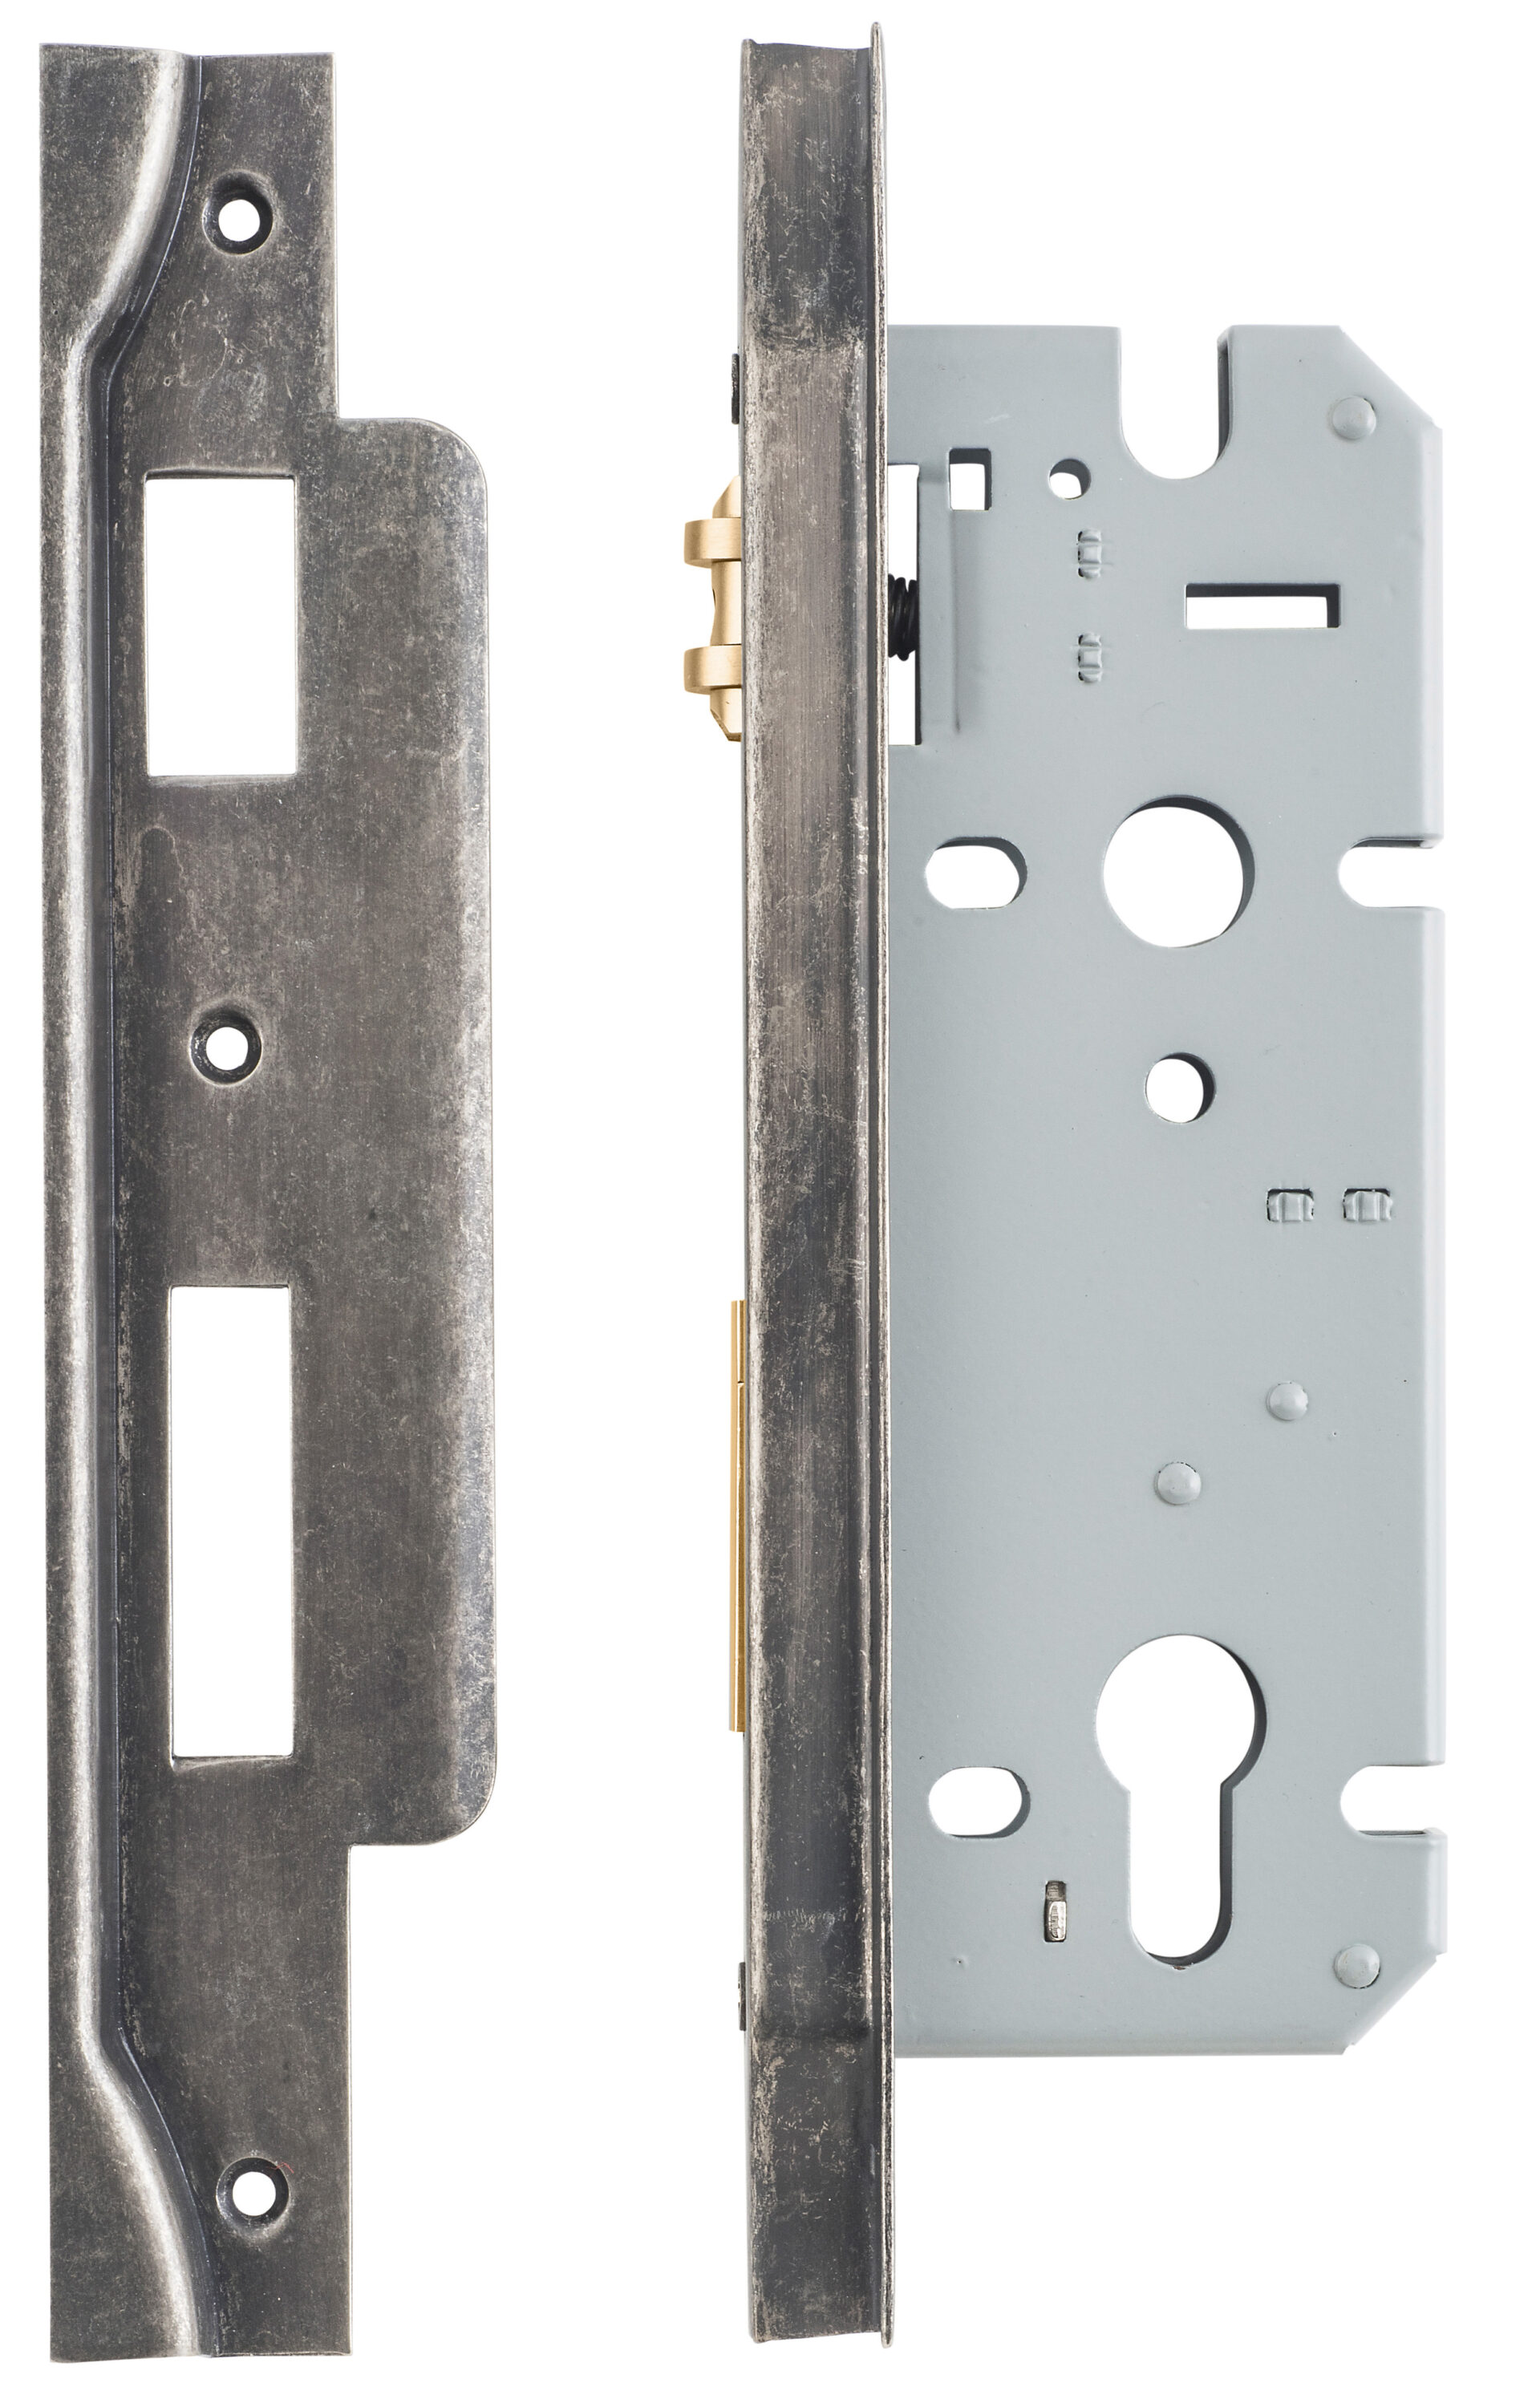 6088 - Rebated 85mm Euro Roller Mortice Locks - 45mm Backset - Distressed Nickel